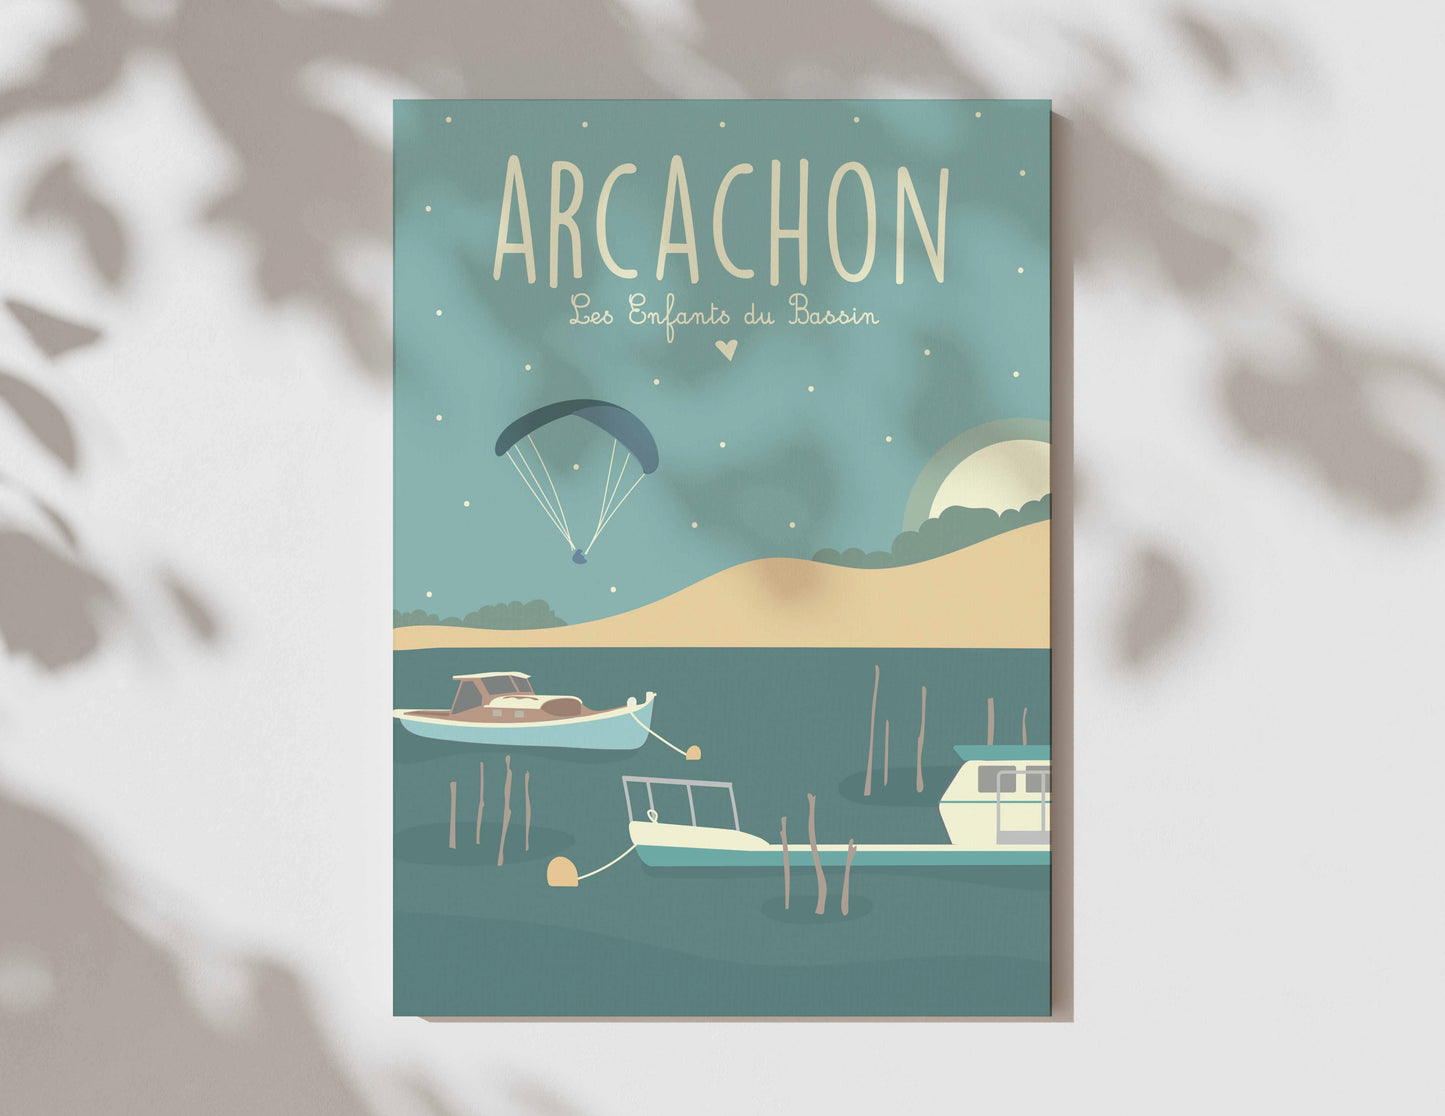 Arcachon